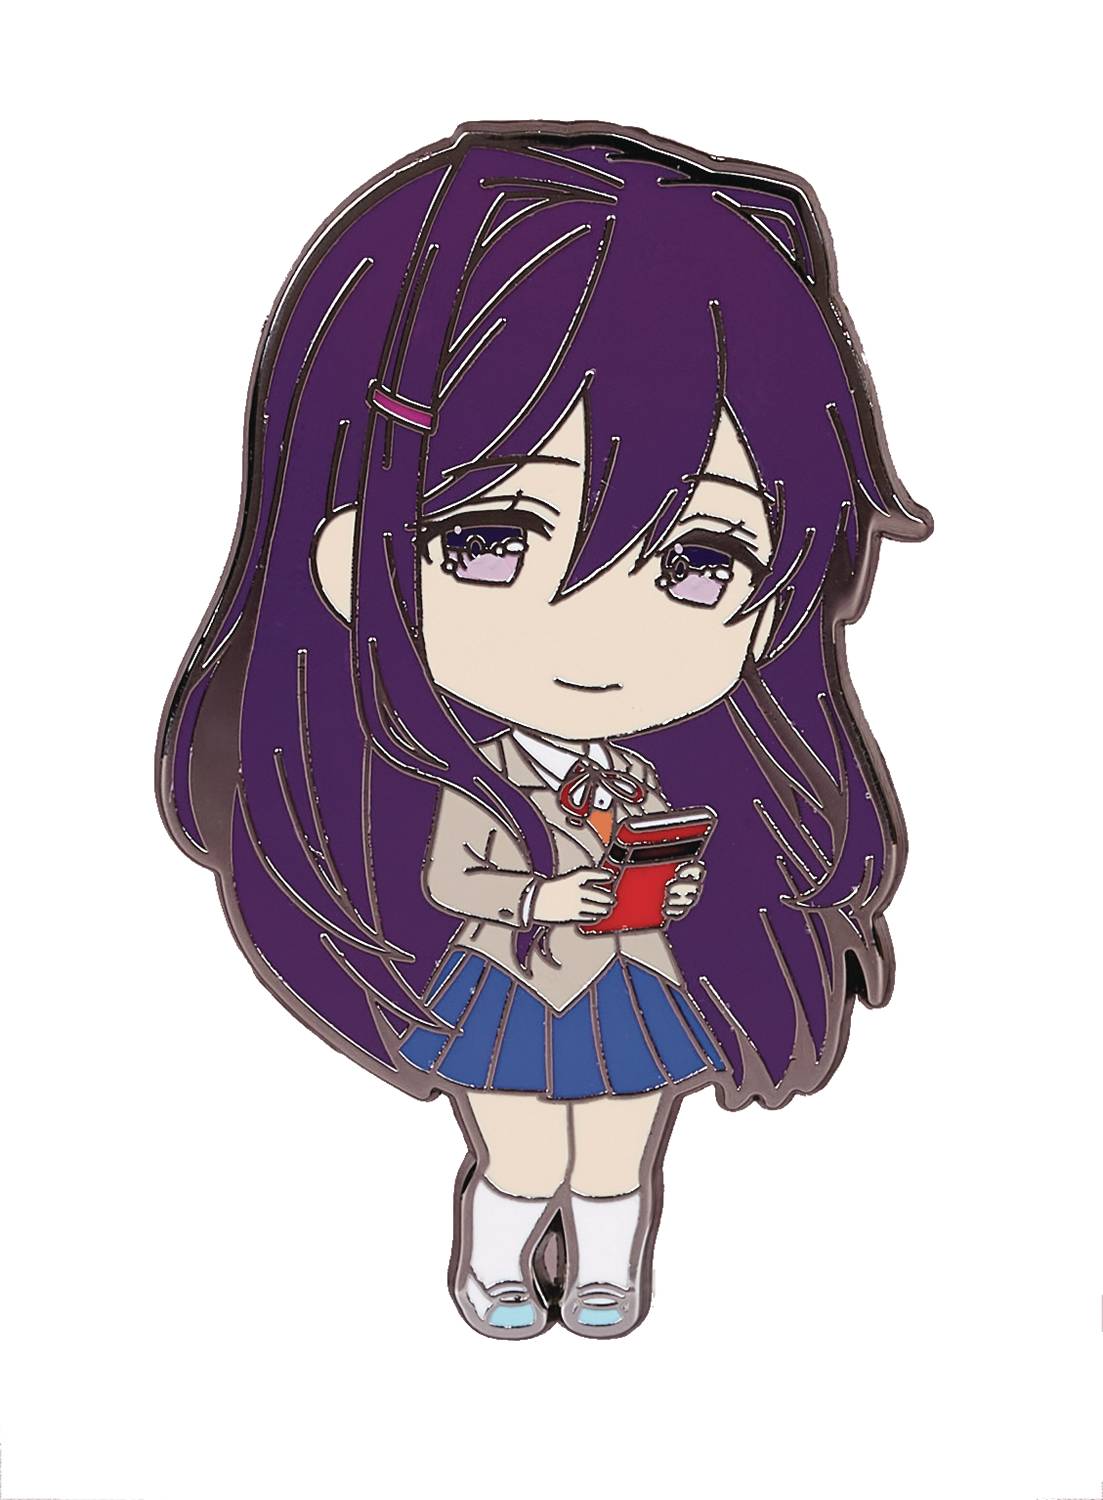 Pin on Yuri